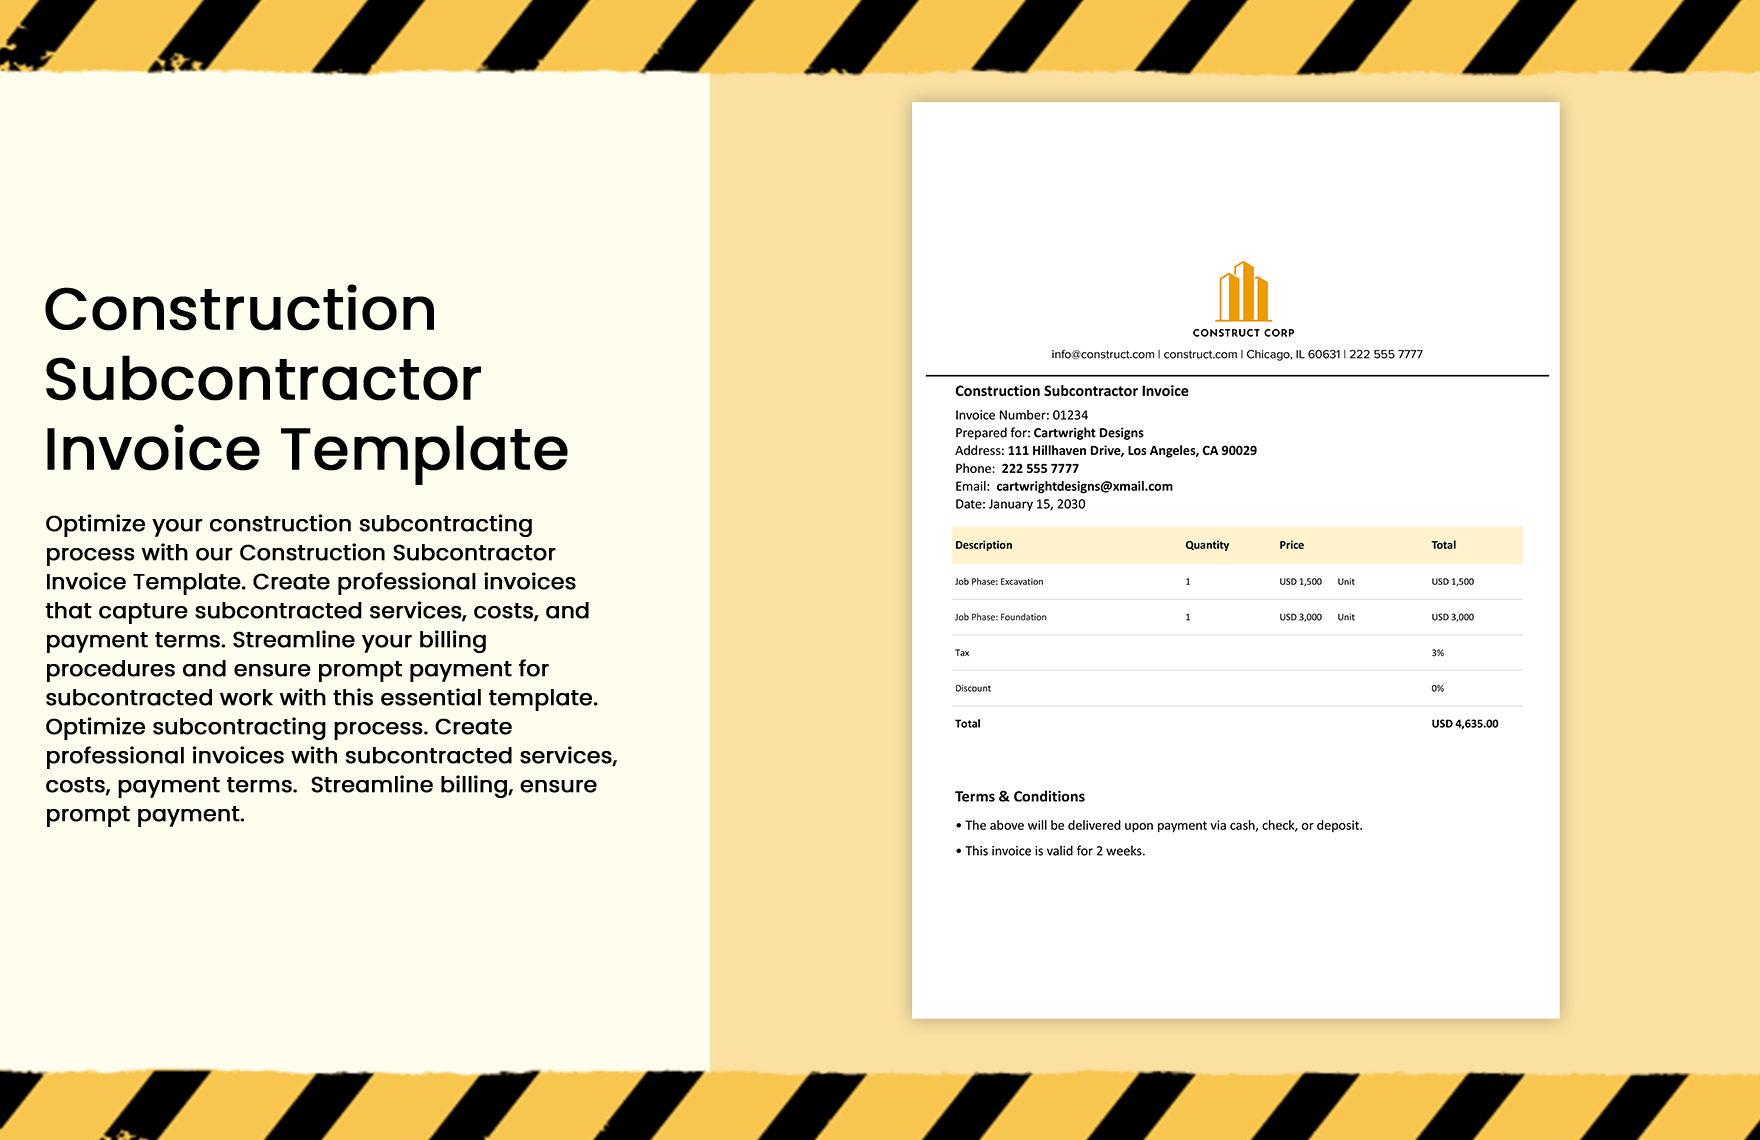  10+ Construction Invoice Template Bundle